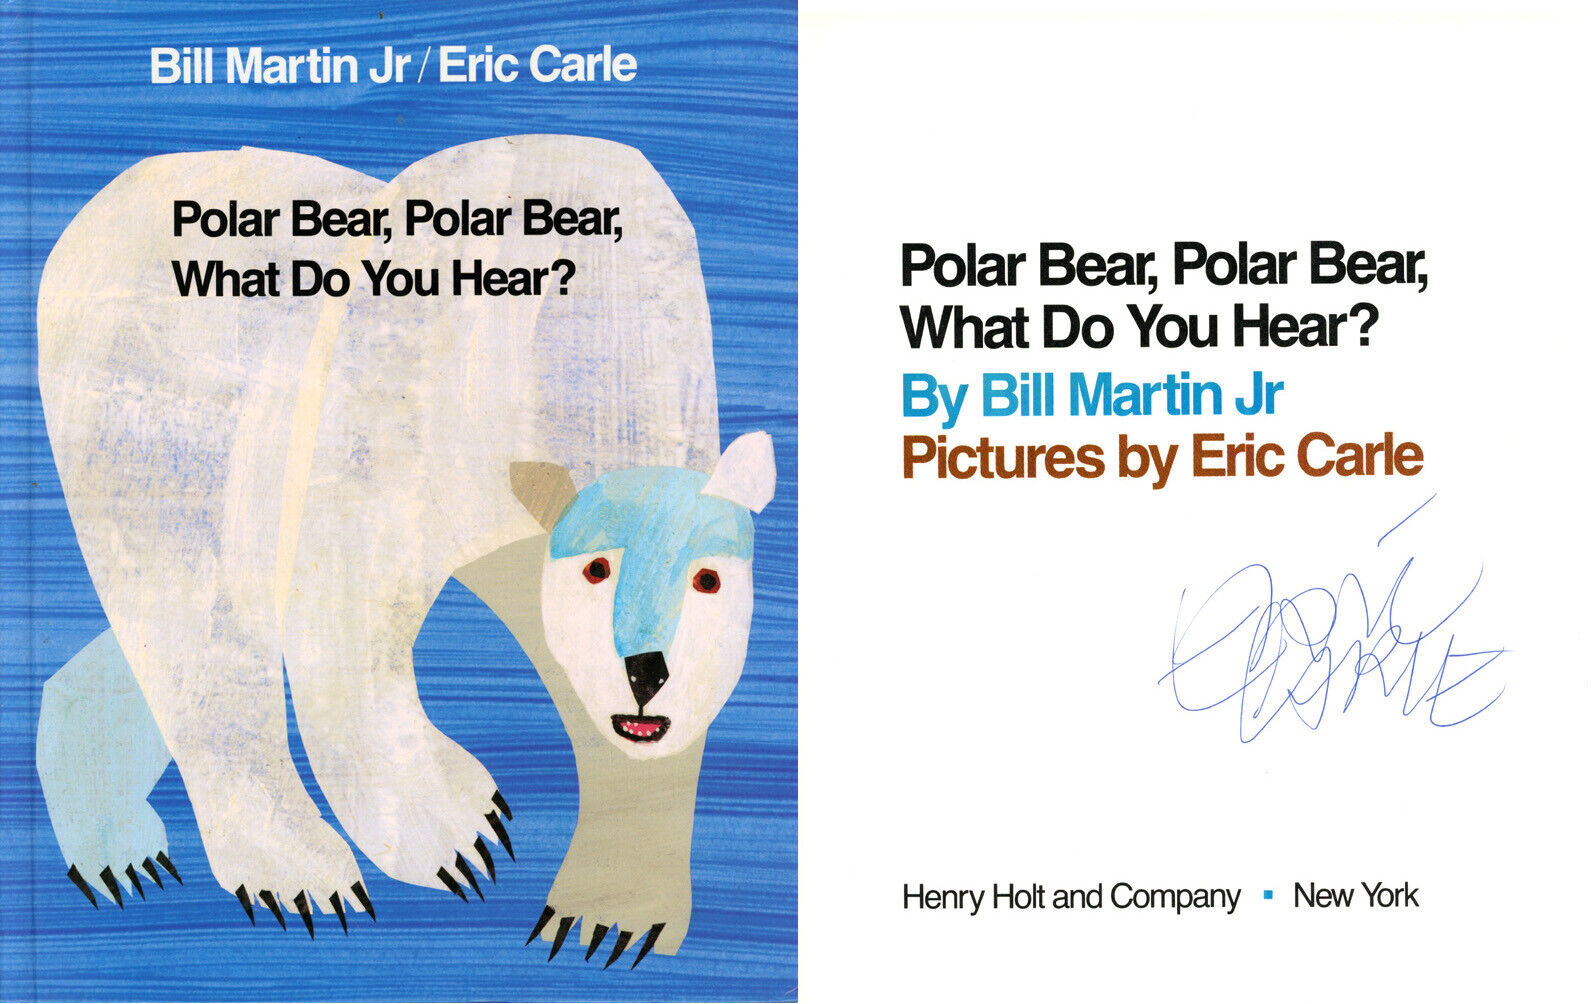 ERIC CARLE SIGNED AUTOGRAPHED POLAR BEAR POLAR BEAR HARDCOVER BOOK BECKETT BAS